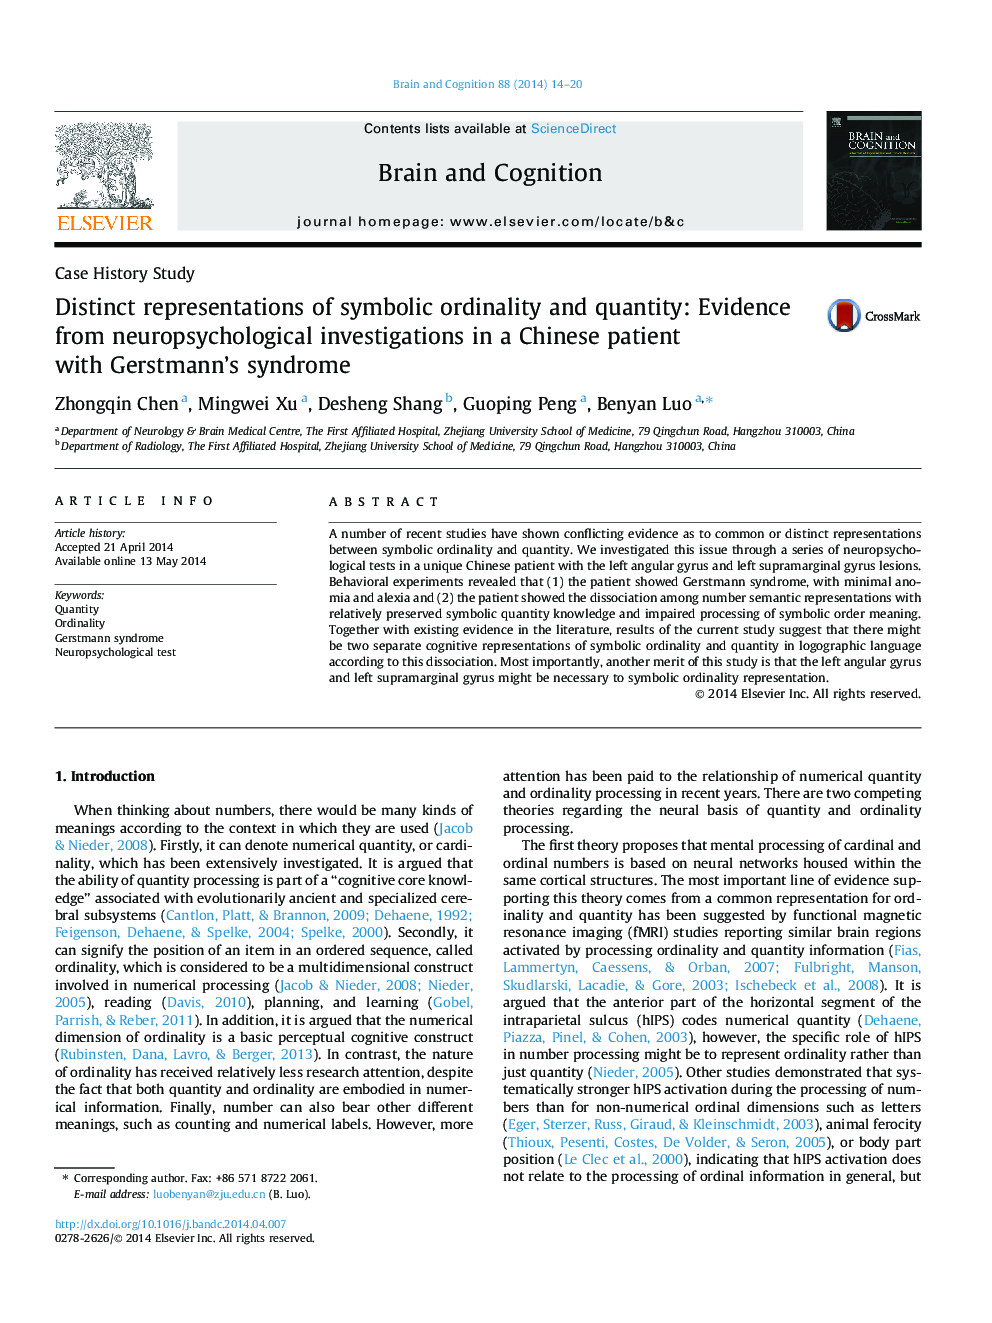 نمایندگی های متمایز از معادله و کمیت نمادین: شواهد حاصل از تحقیقات نوروپسیکتیک در یک بیمار چینی با سندرم گوردمننا 